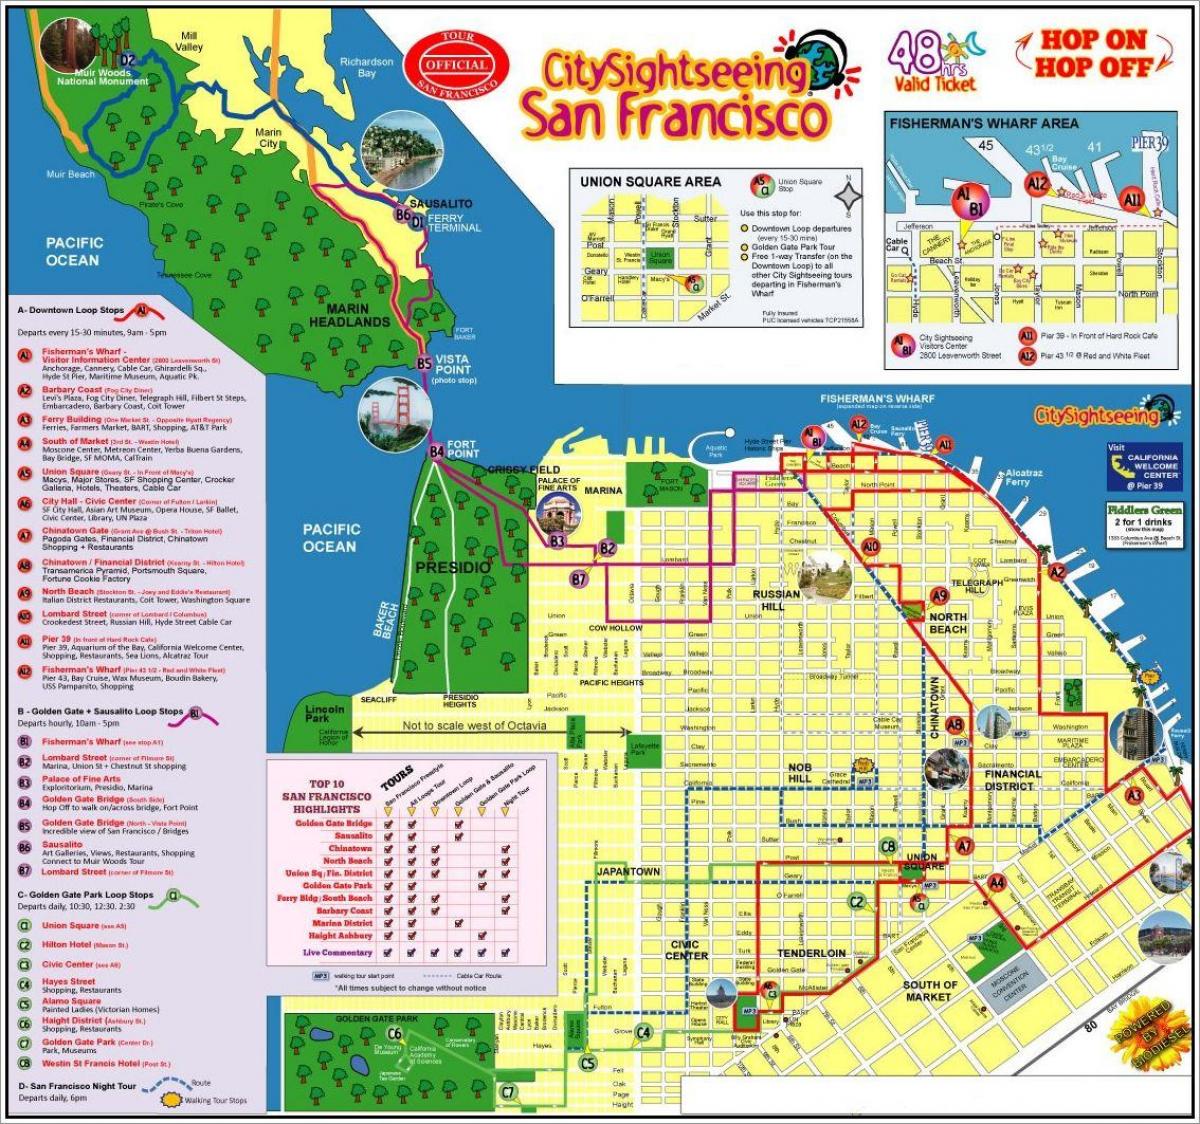 城市观光旧金山的旅游地图